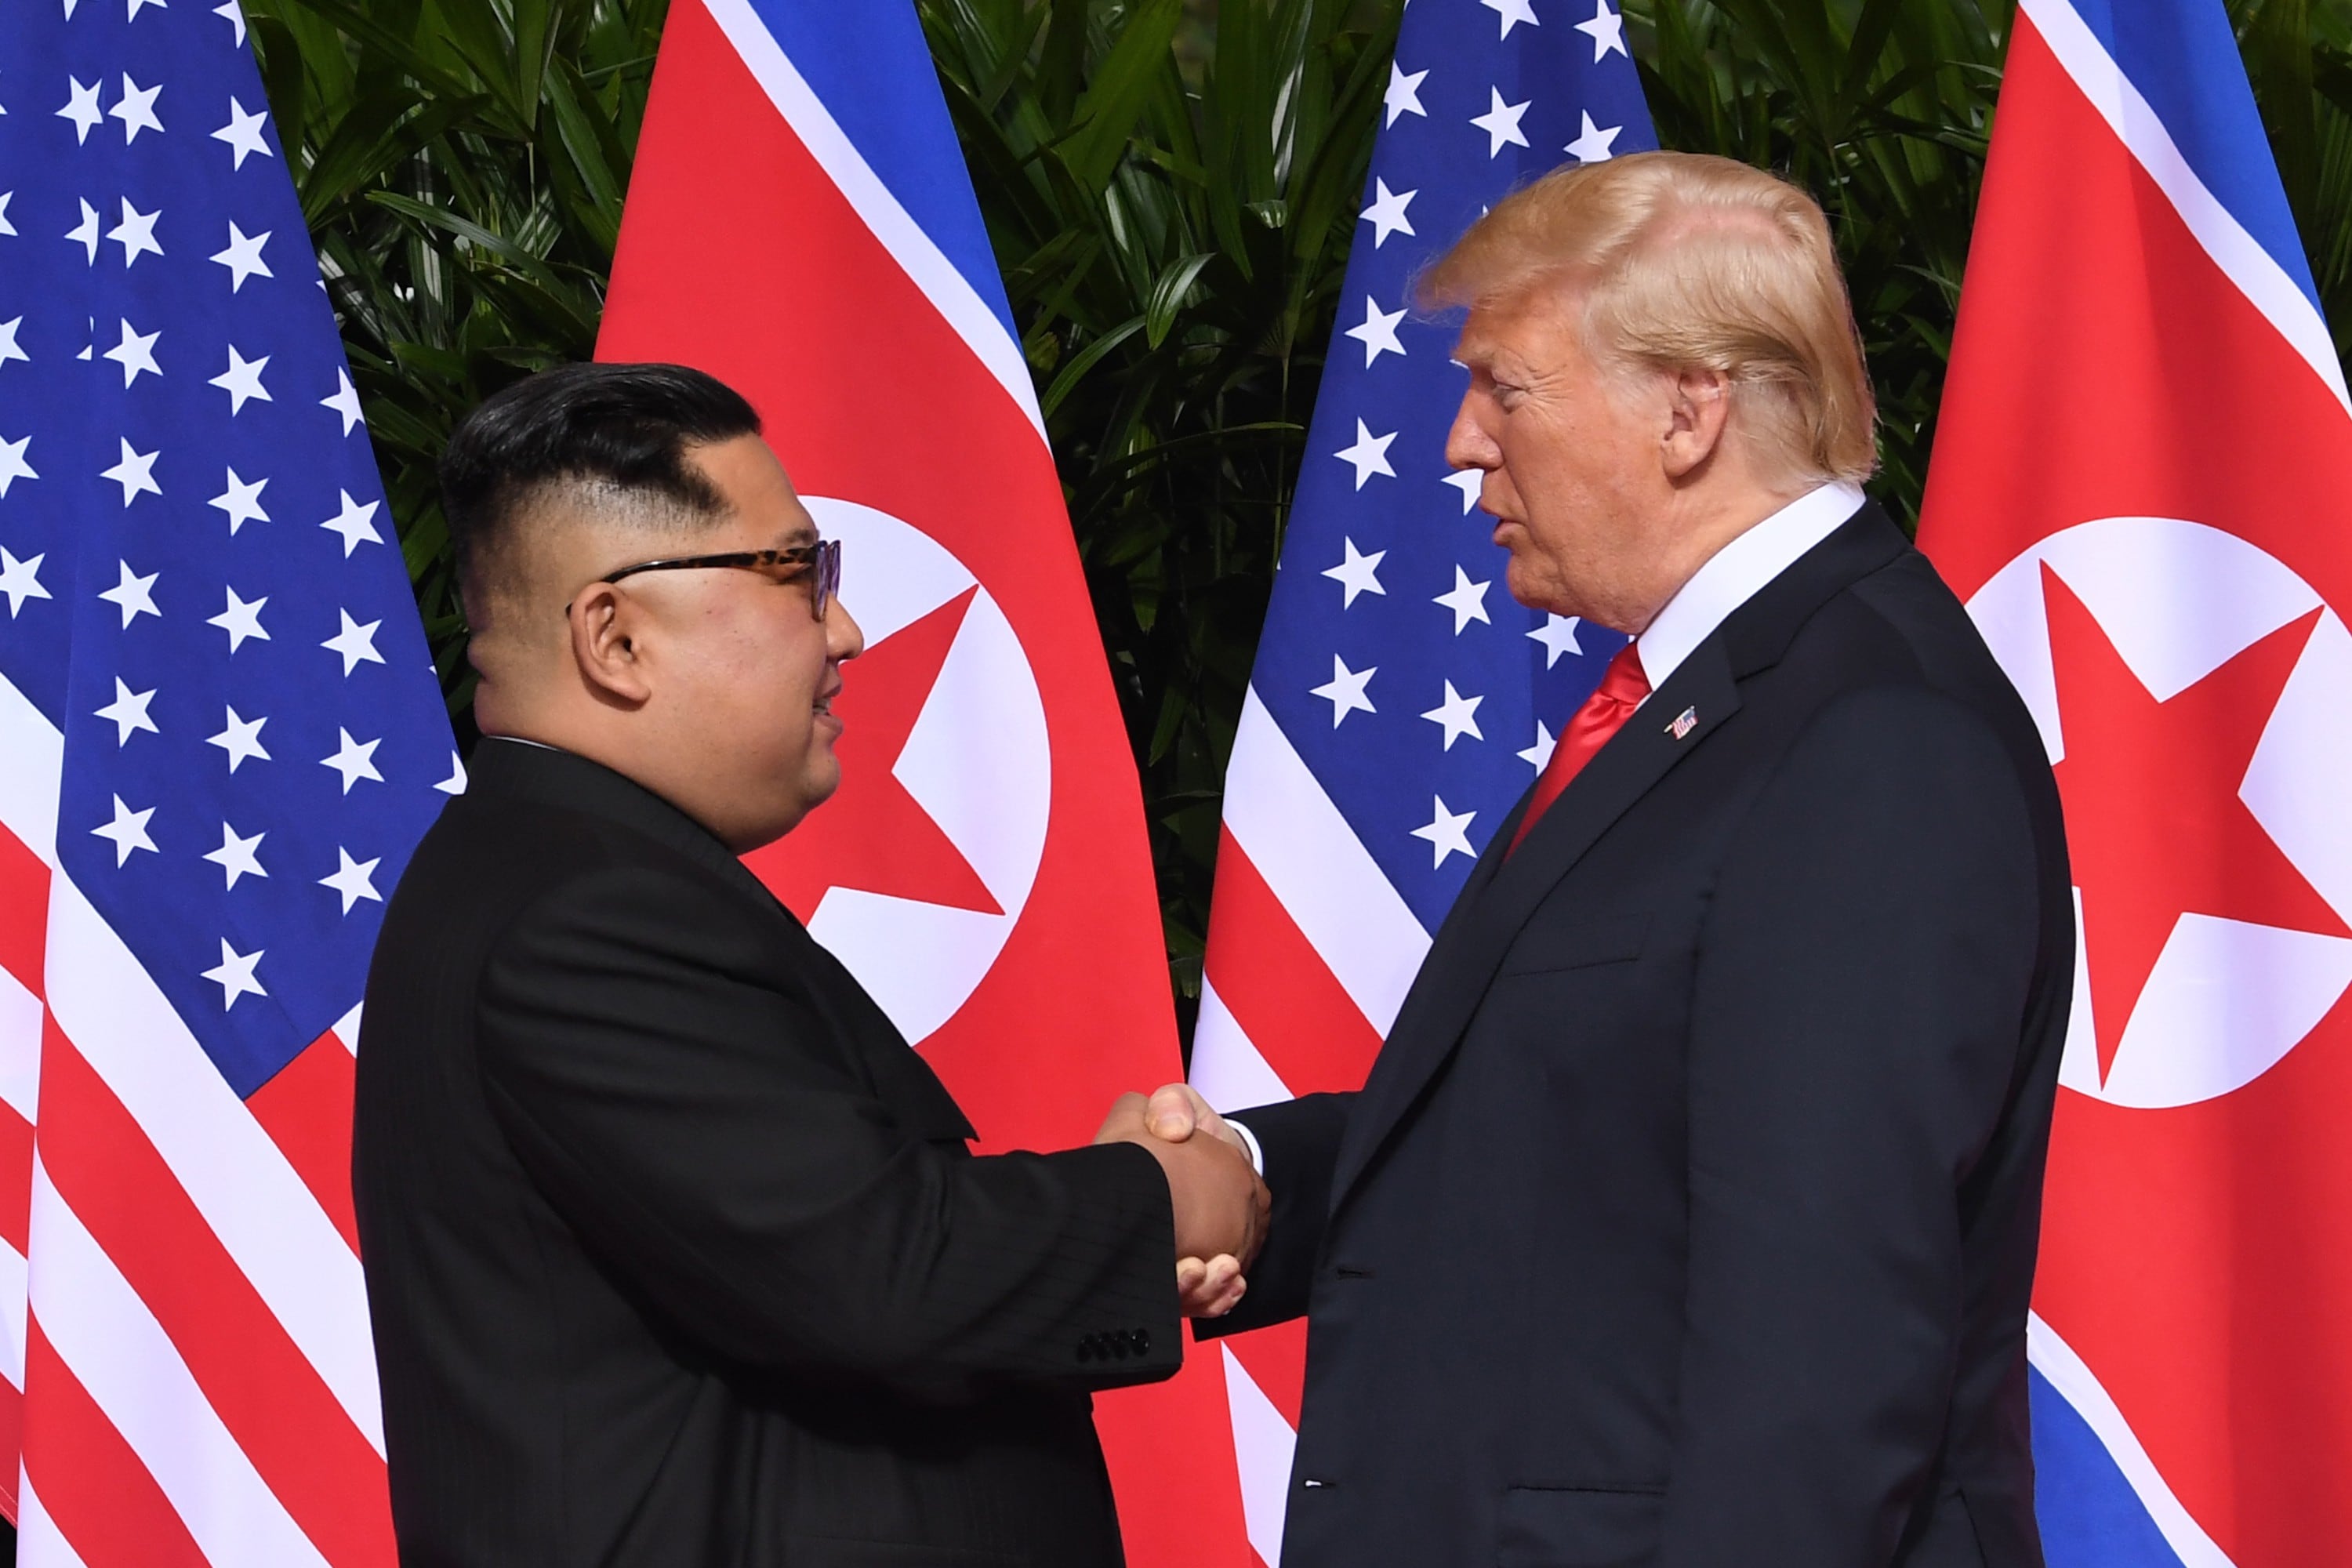 El histórico hecho tuvo lugar en Singapur. Donald Trump y Kim Jong Un buscan el diálogo entre ambas naciones.